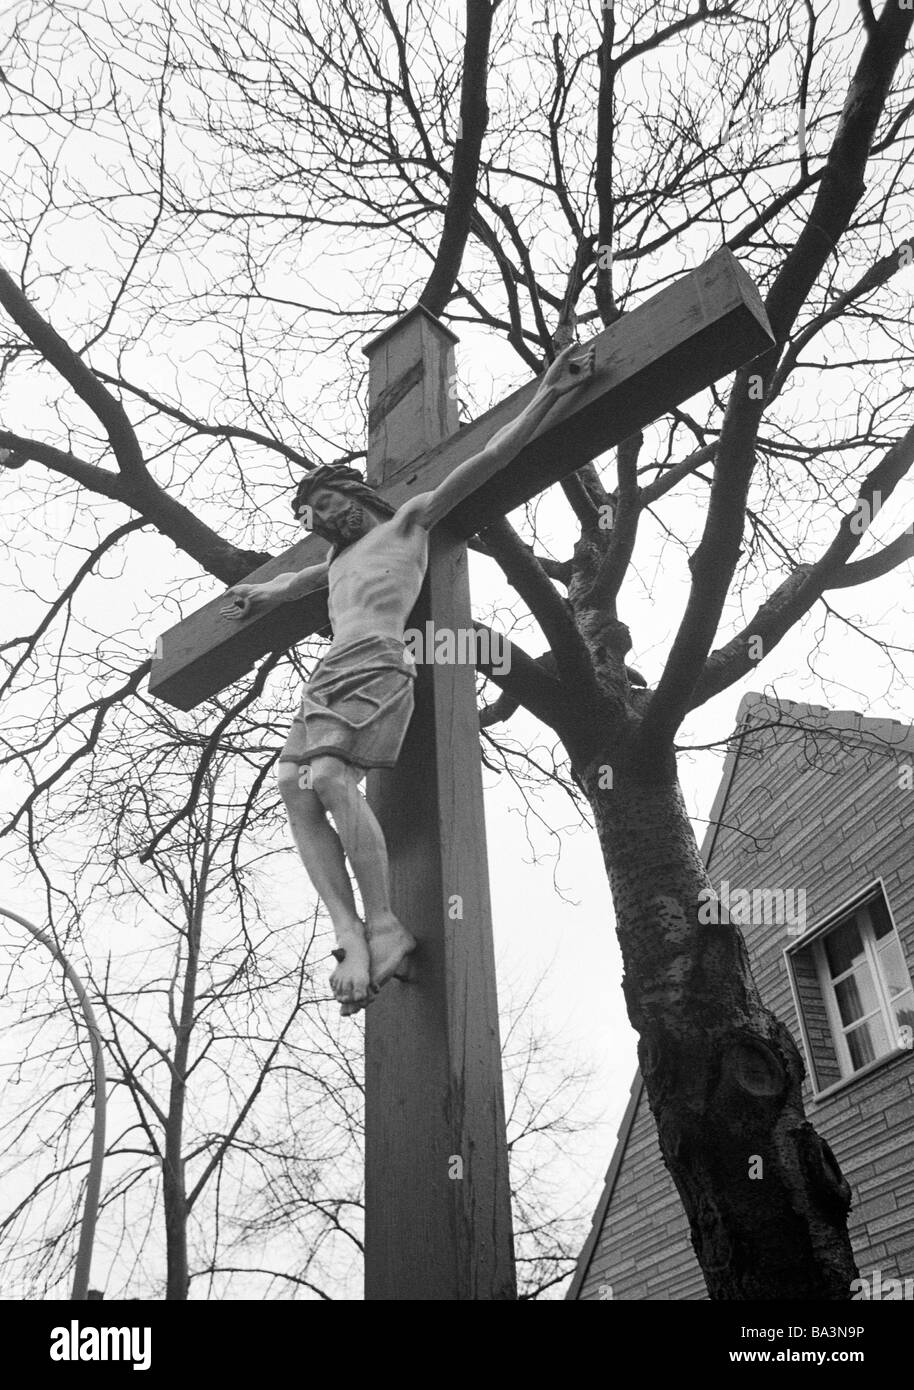 70er Jahre, schwarz / weiß Foto, Religion, Christentum, Wayside Kreuz in der Nähe von einer Birke Baum, D-Bottrop, Ruhrgebiet, Nordrhein-Westfalen Stockfoto